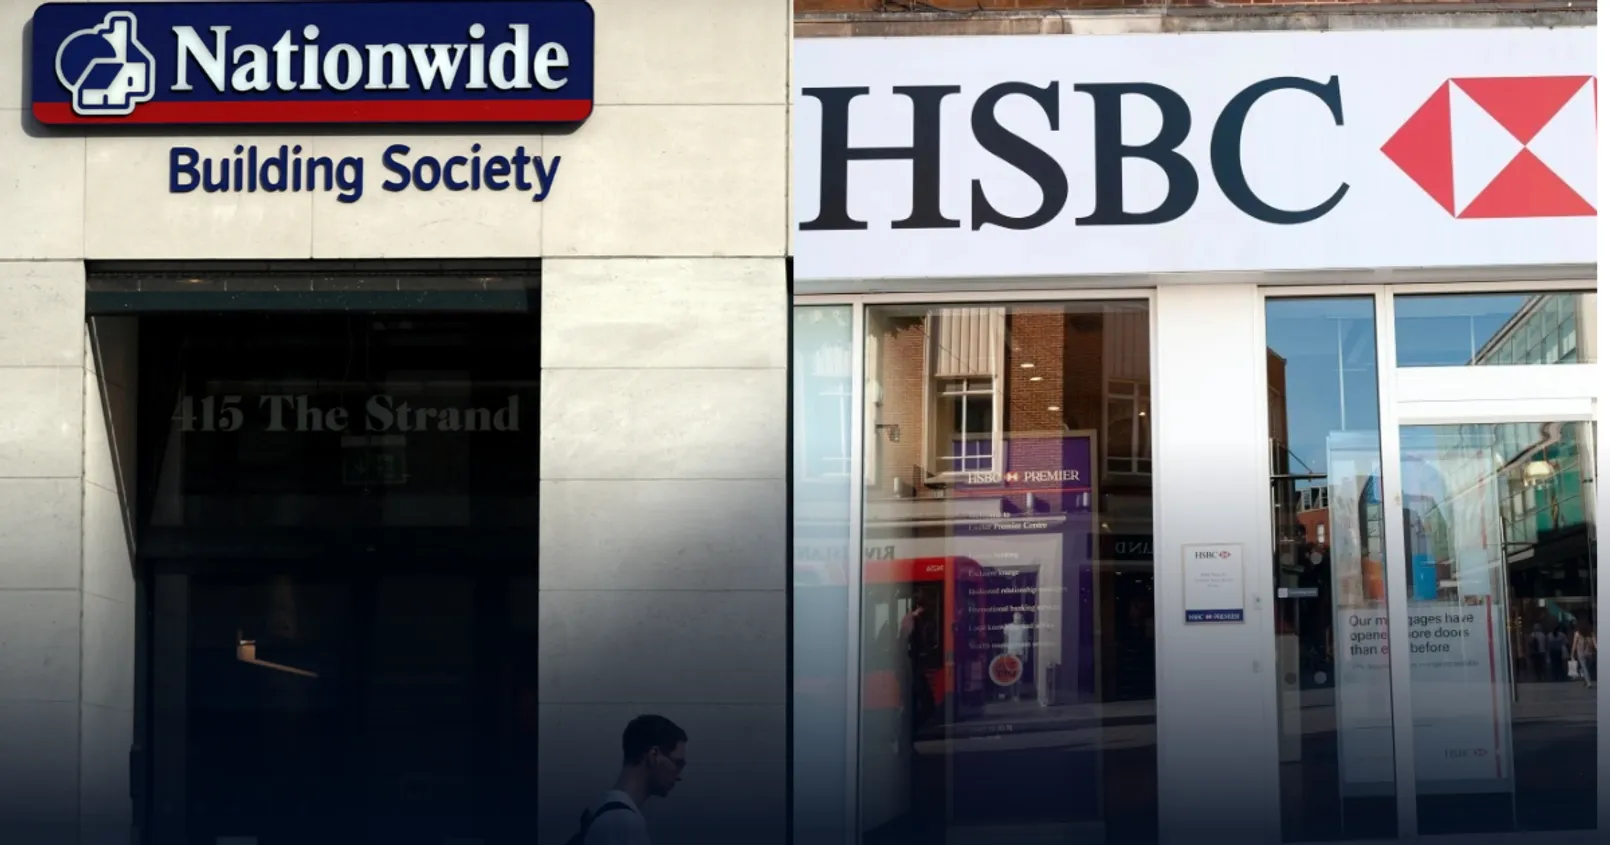 ธนาคาร HSBC และ Nationwide Building Society ได้สั่งห้ามการซื้อคริปโตผ่านบัตรเครดิต